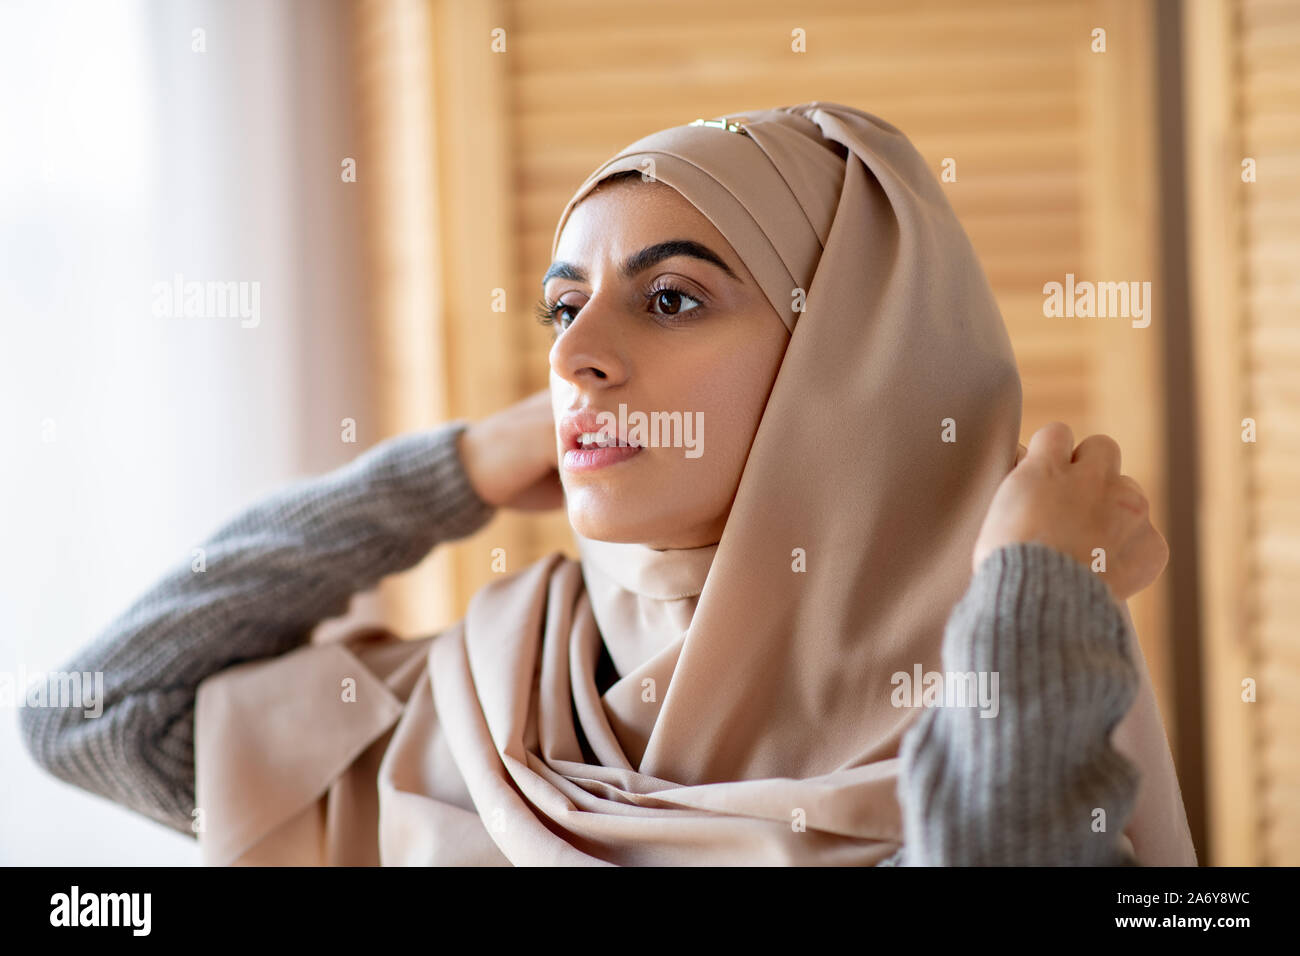 Jolie jeune fille musulmane s'habille en hijab dans la chambre Banque D'Images